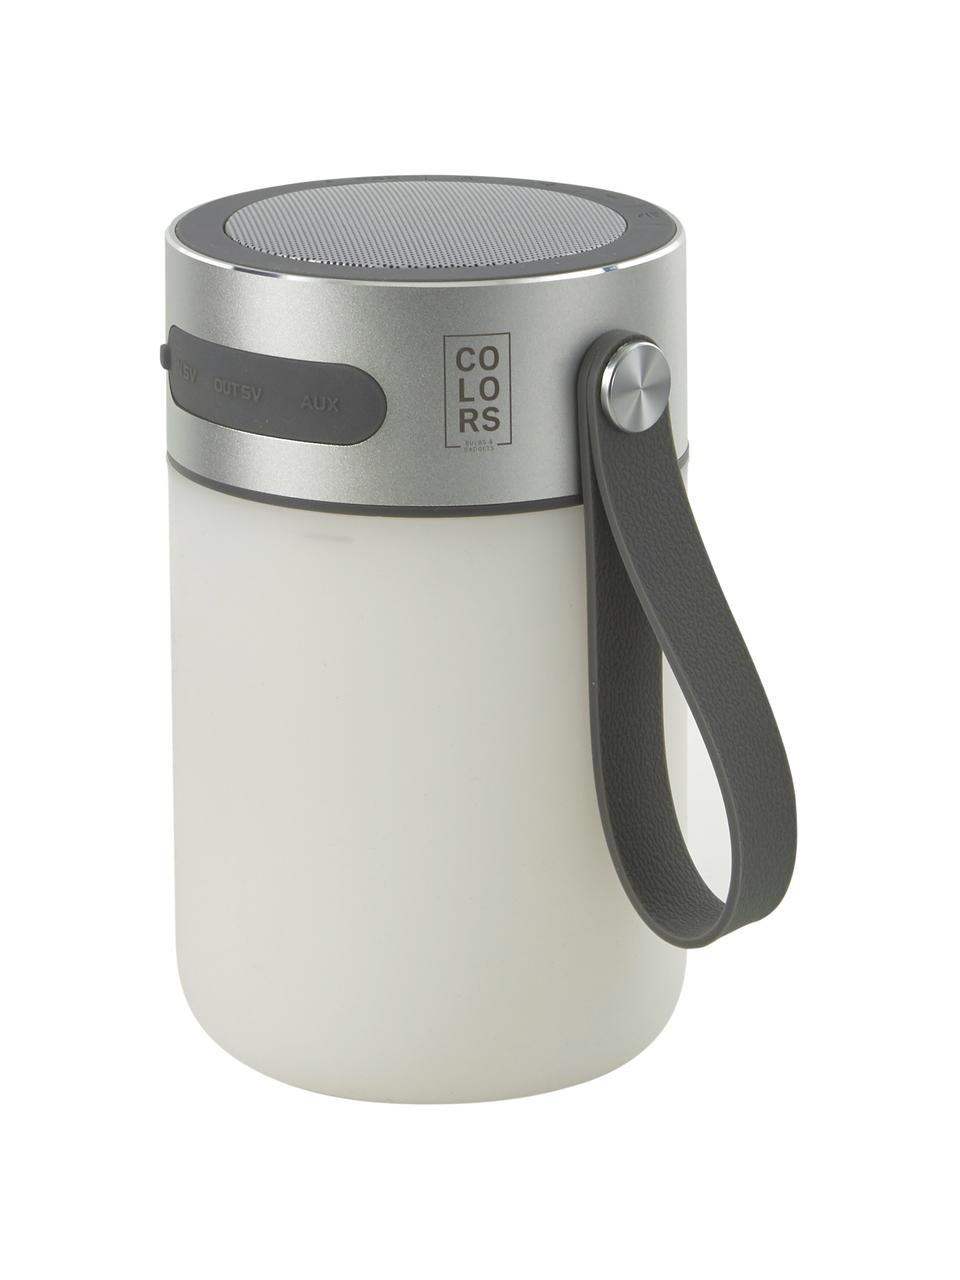 Mobile Dimmbare Tischlampe Sound Jar mit Lautsprecher, Lampenschirm: Kunststoff, Griff: Kunststoff, Silberfarben, Weiß, Ø 9 x H 14 cm